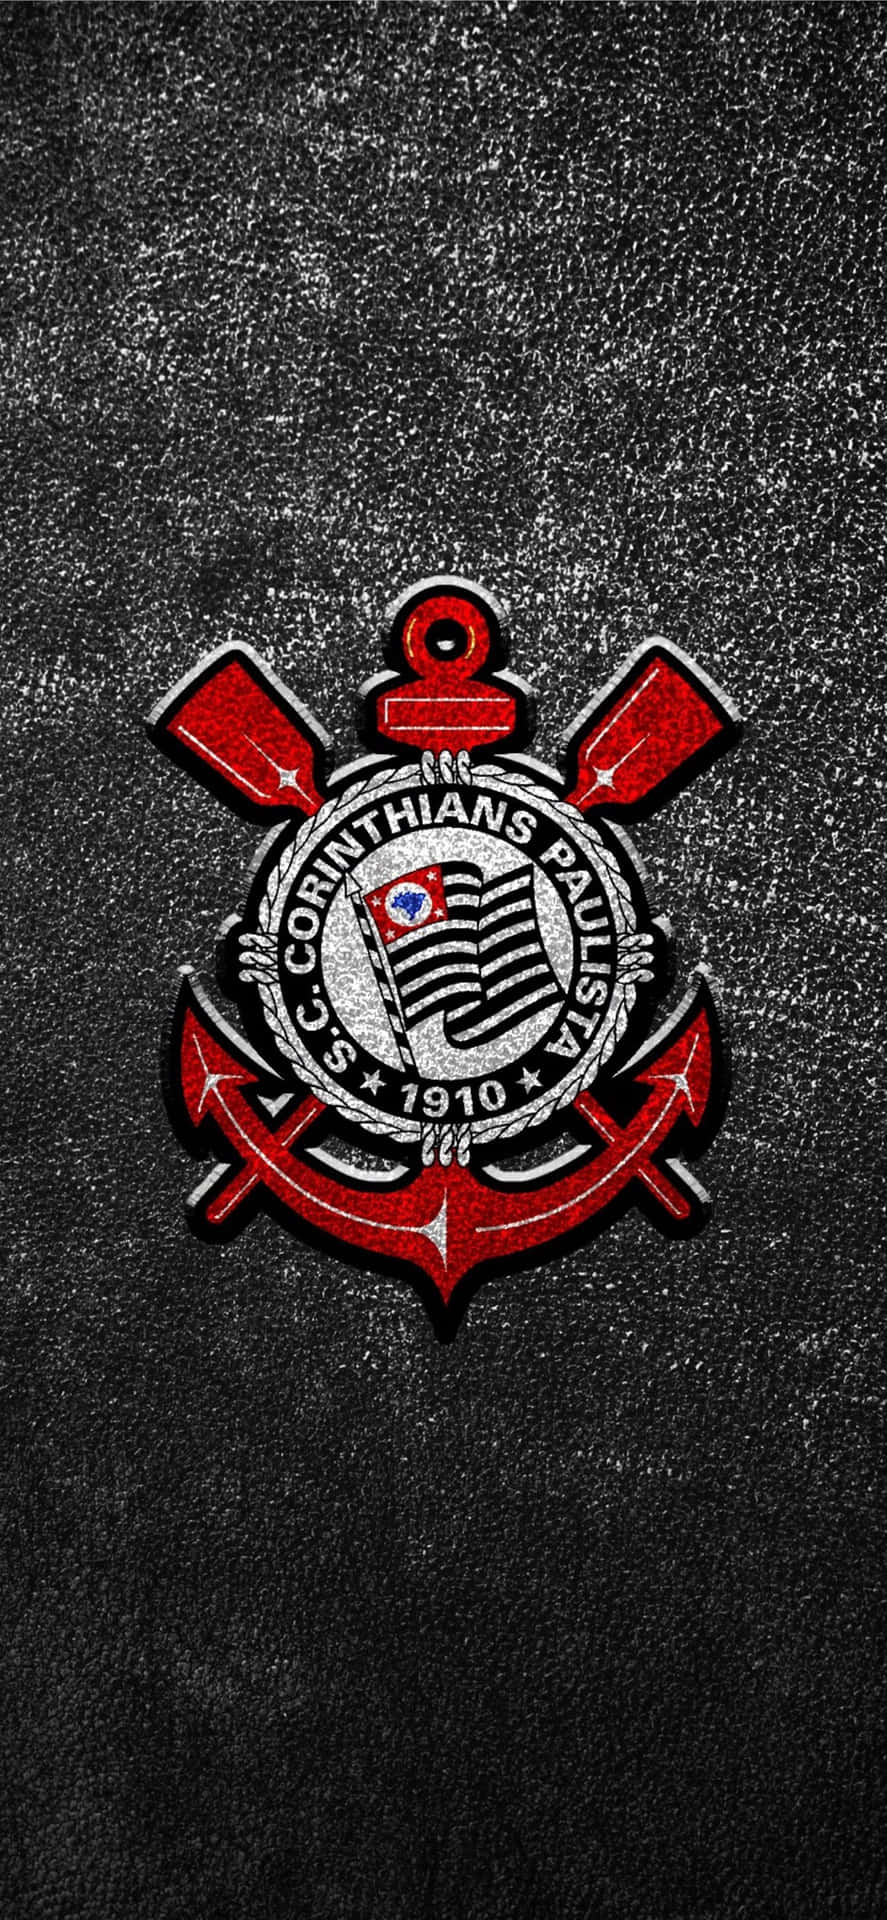 Corinthians Football Club Emblem Wallpaper Wallpaper